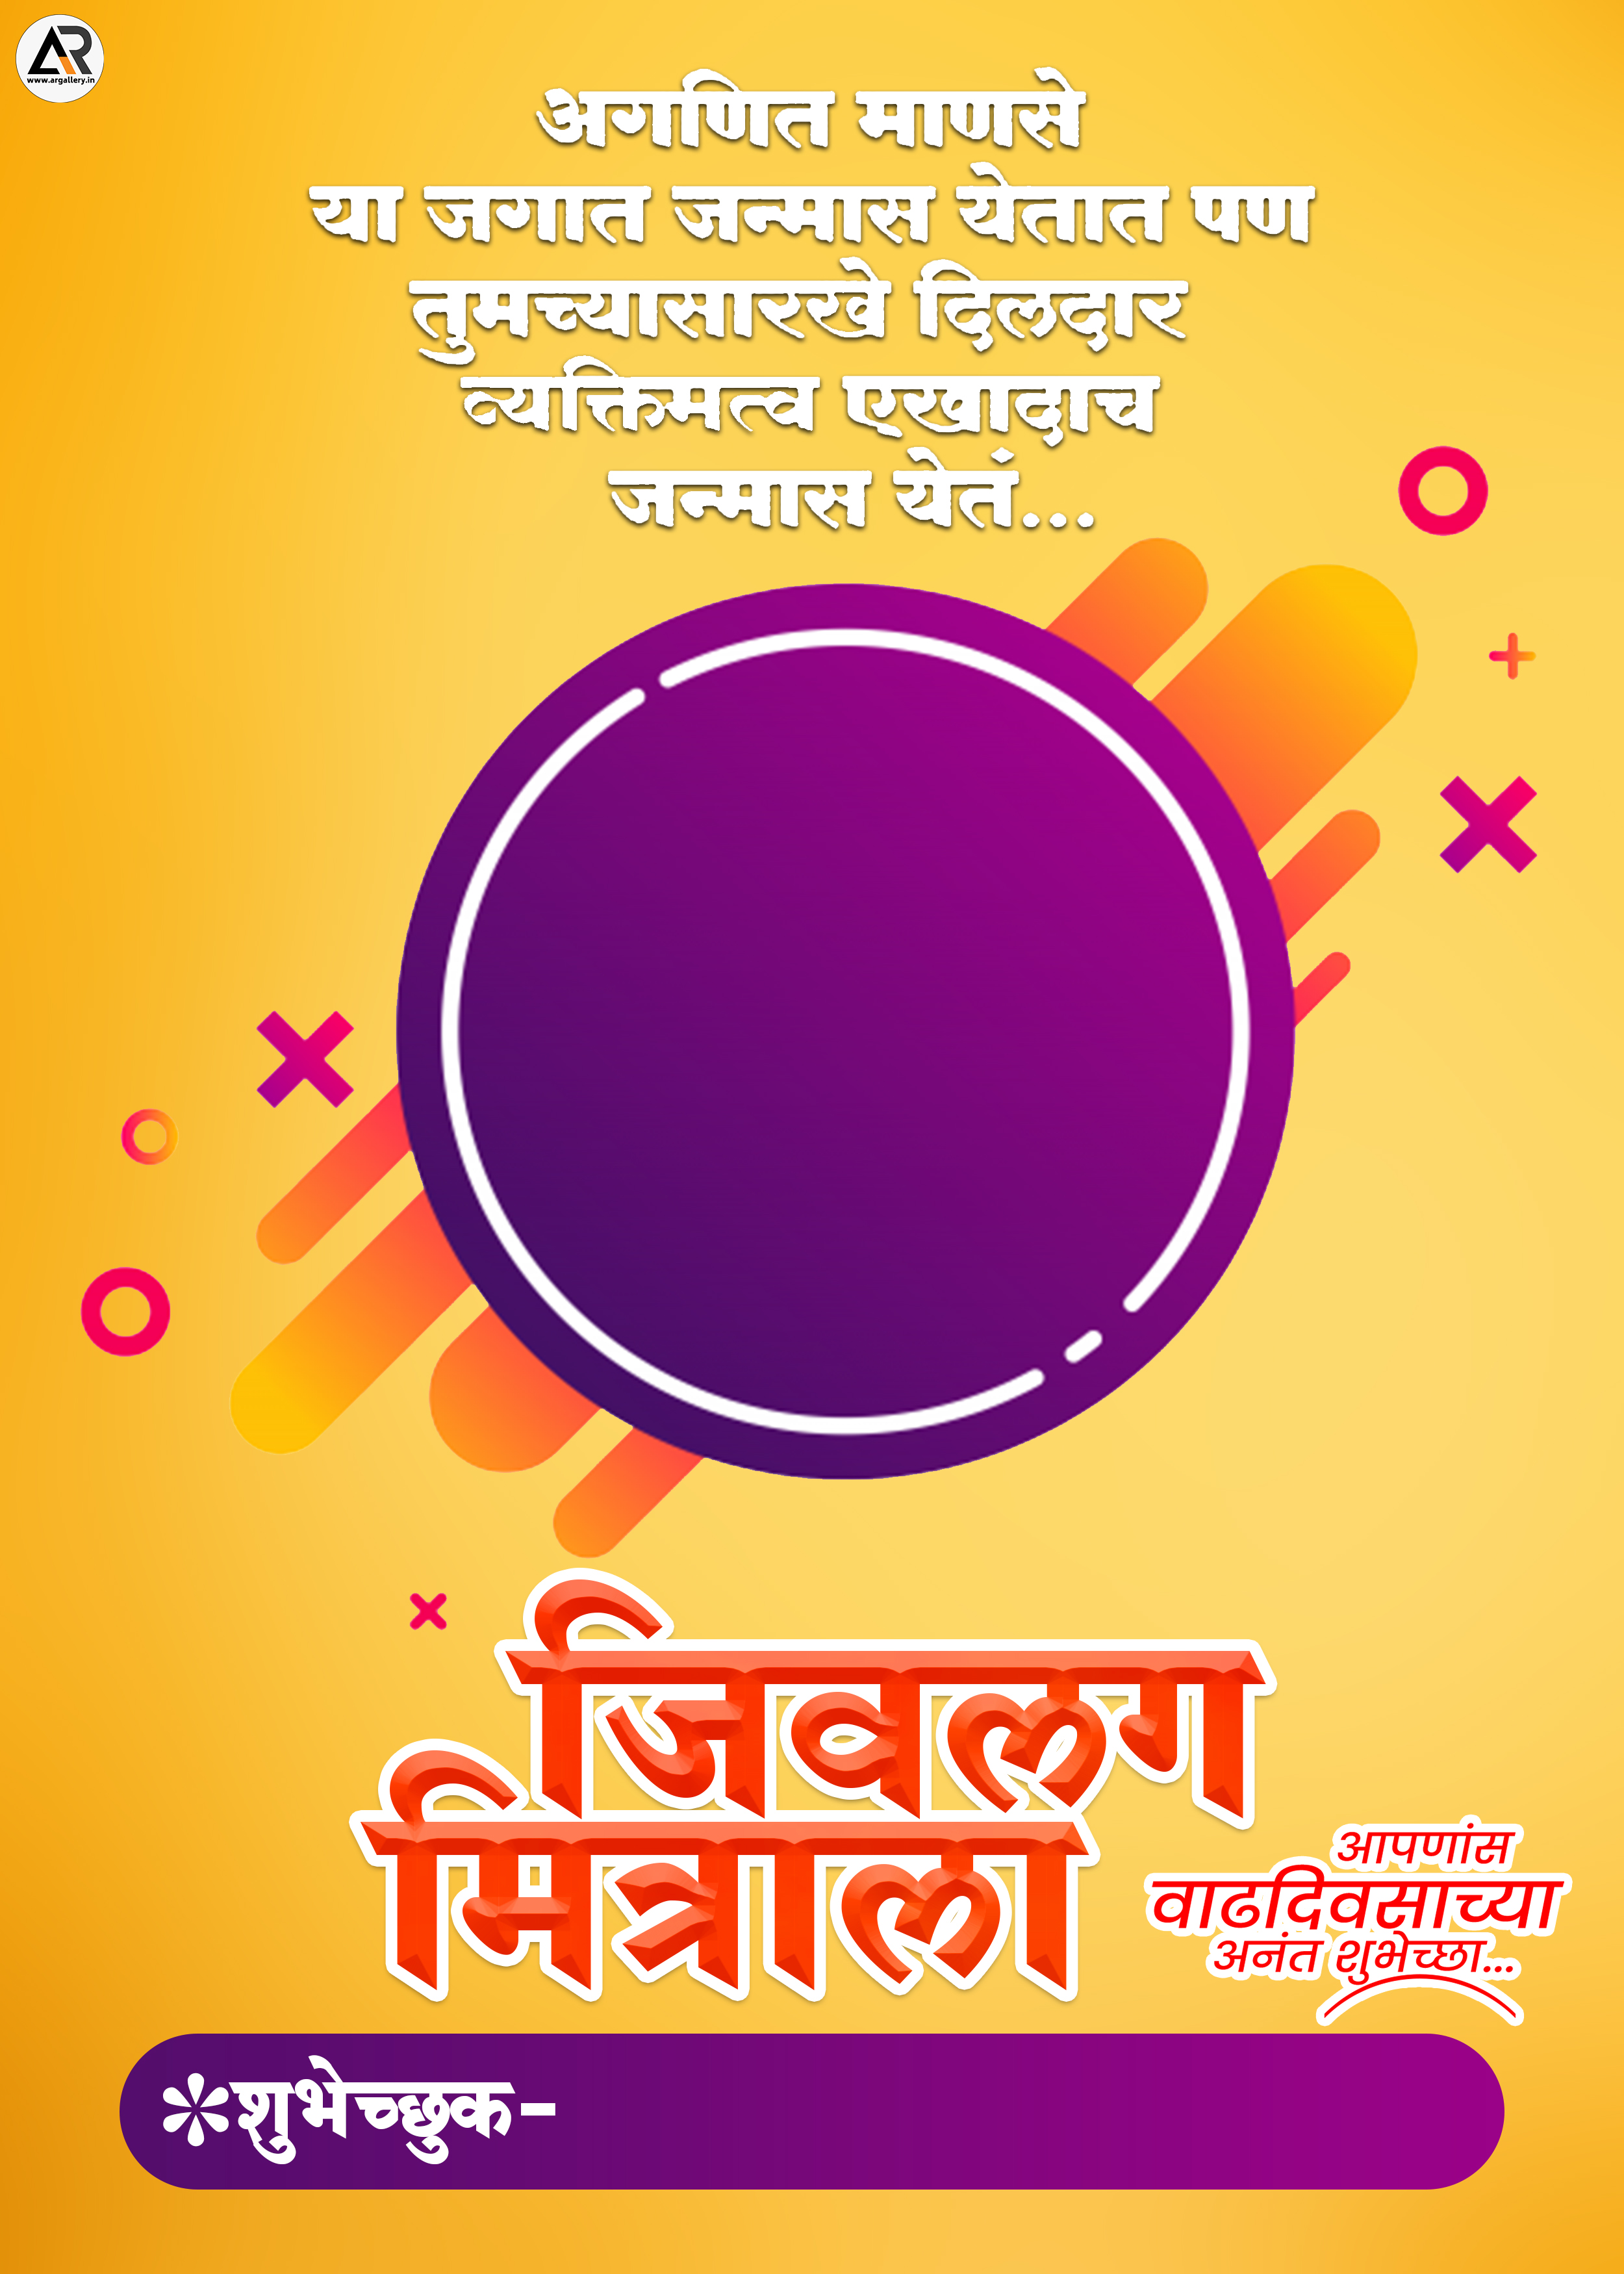 Happy Birthday Banner Marathi Background Images Photos